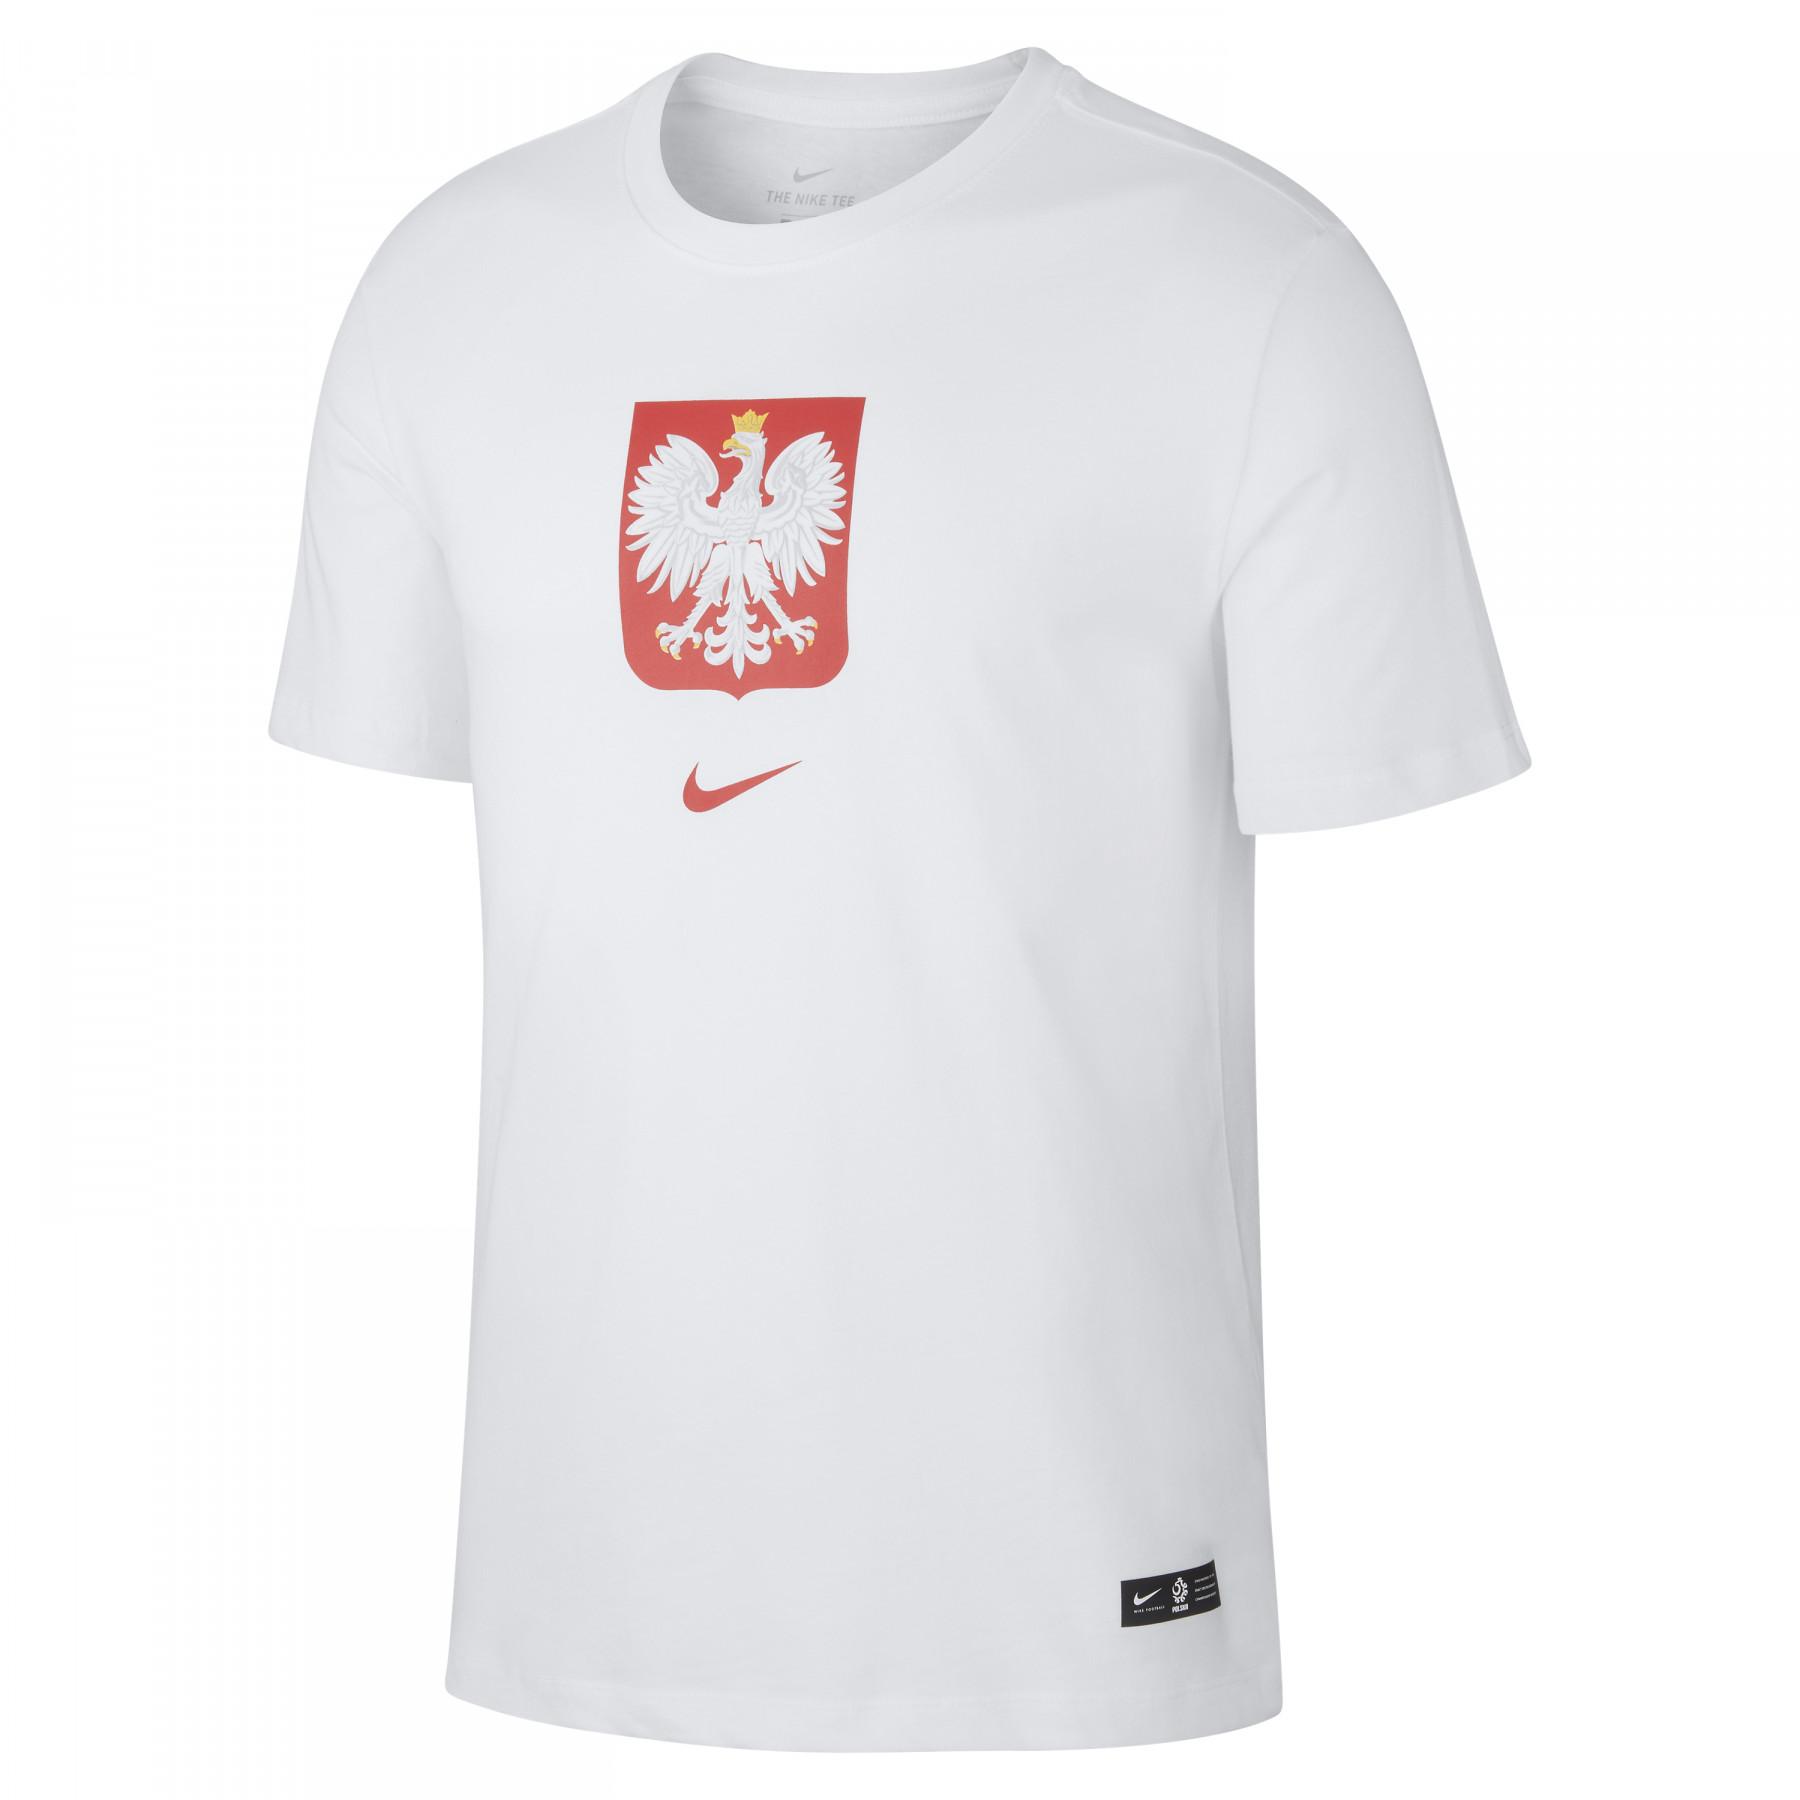 Koszulka Pologne Evergreen Crest